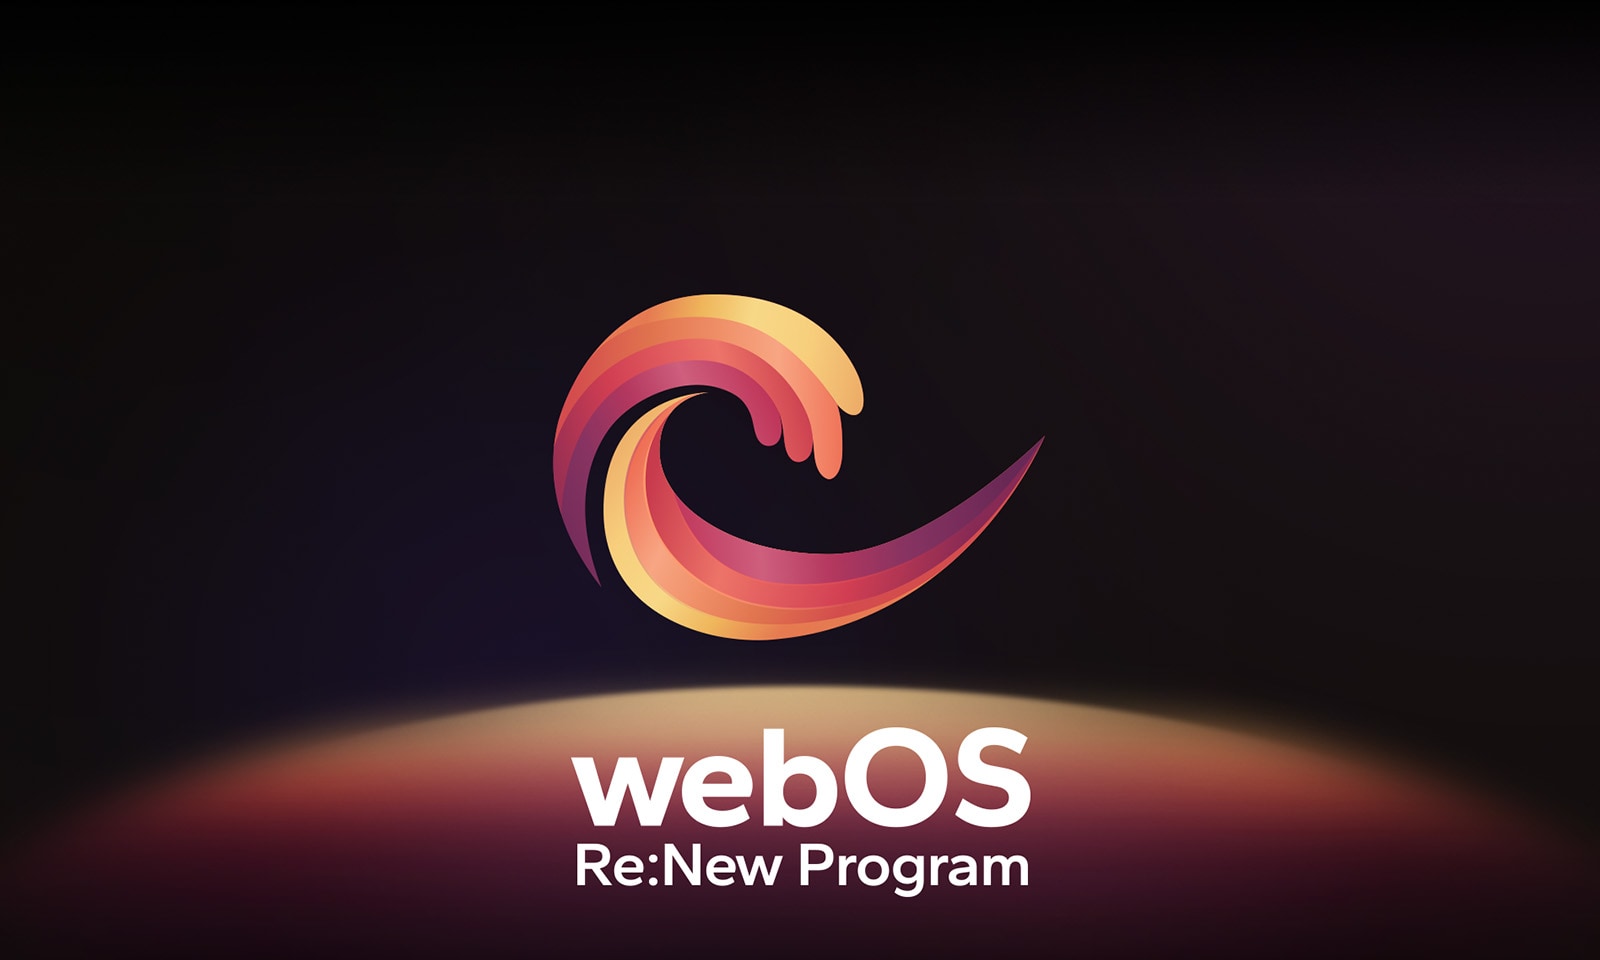 شعار webOS Re:New Program يتم عرضه على خلفية سوداء مع كرة دائرية باللون الأصفر والبرتقالي والأرجواني في أسفل الصورة. 